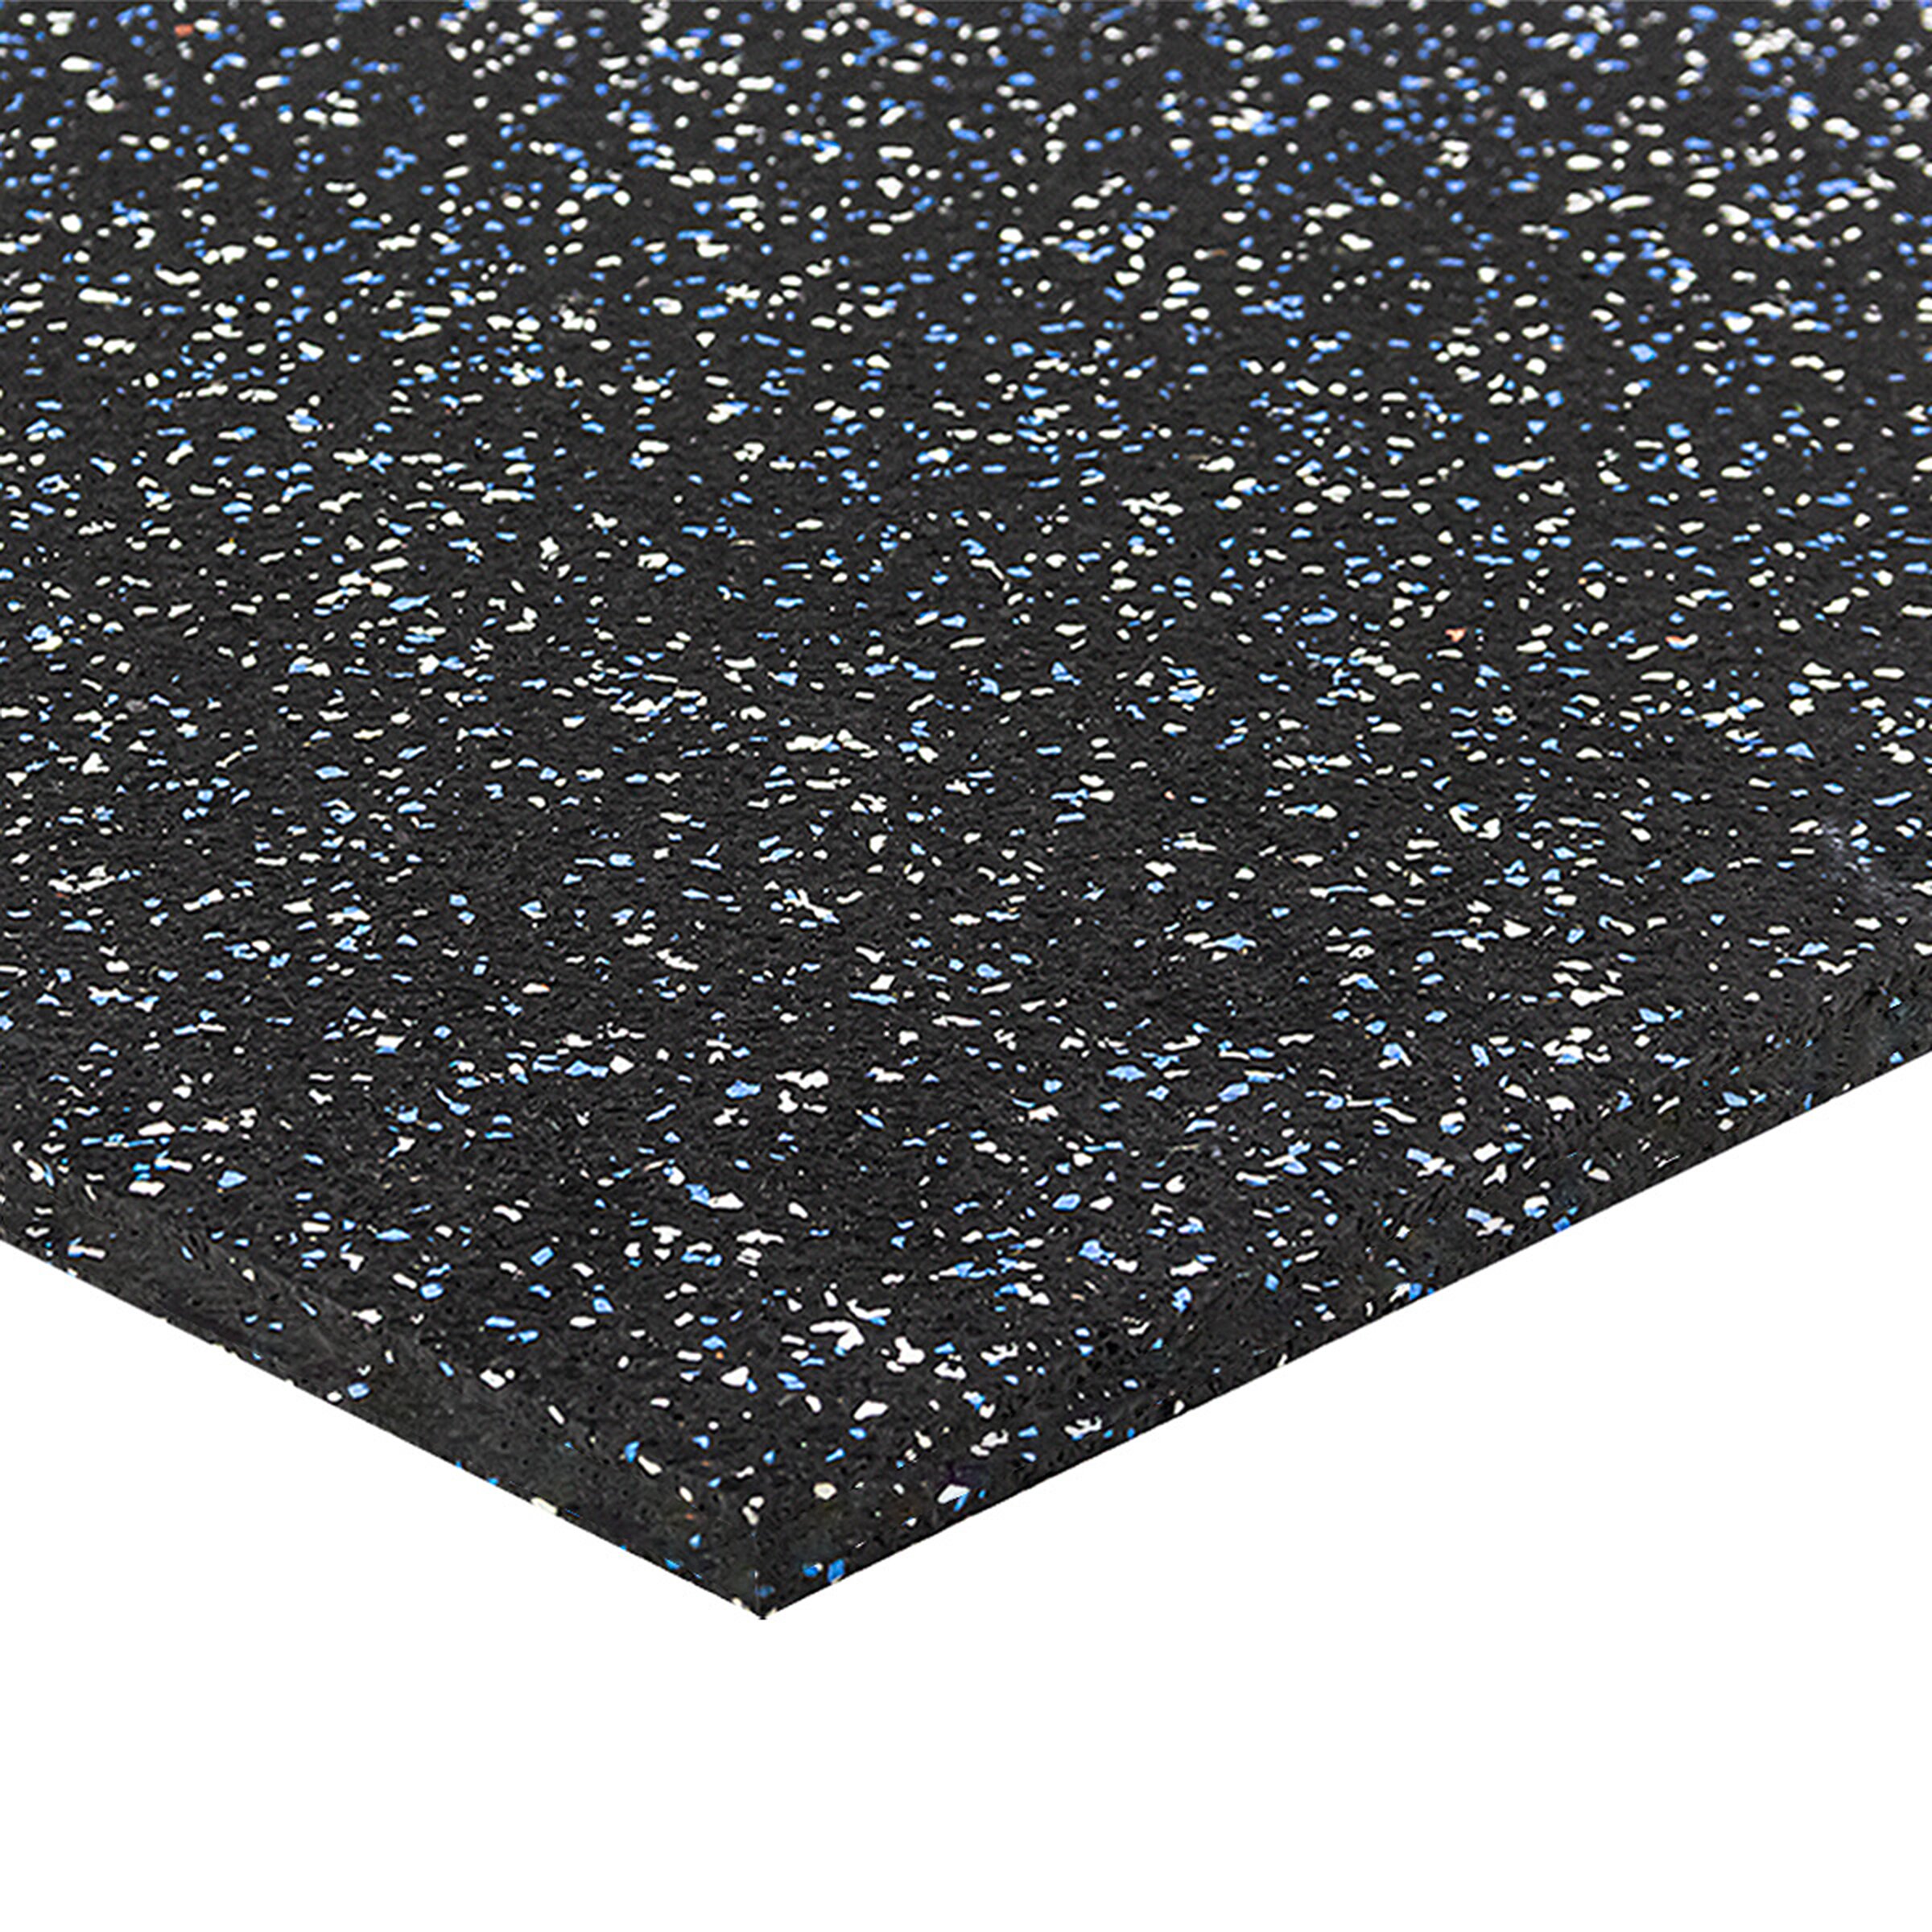 Černo-bílo-modrá podlahová guma (puzzle - roh) FLOMA FitFlo SF1050 - délka 50 cm, šířka 50 cm, výška 1,6 cm